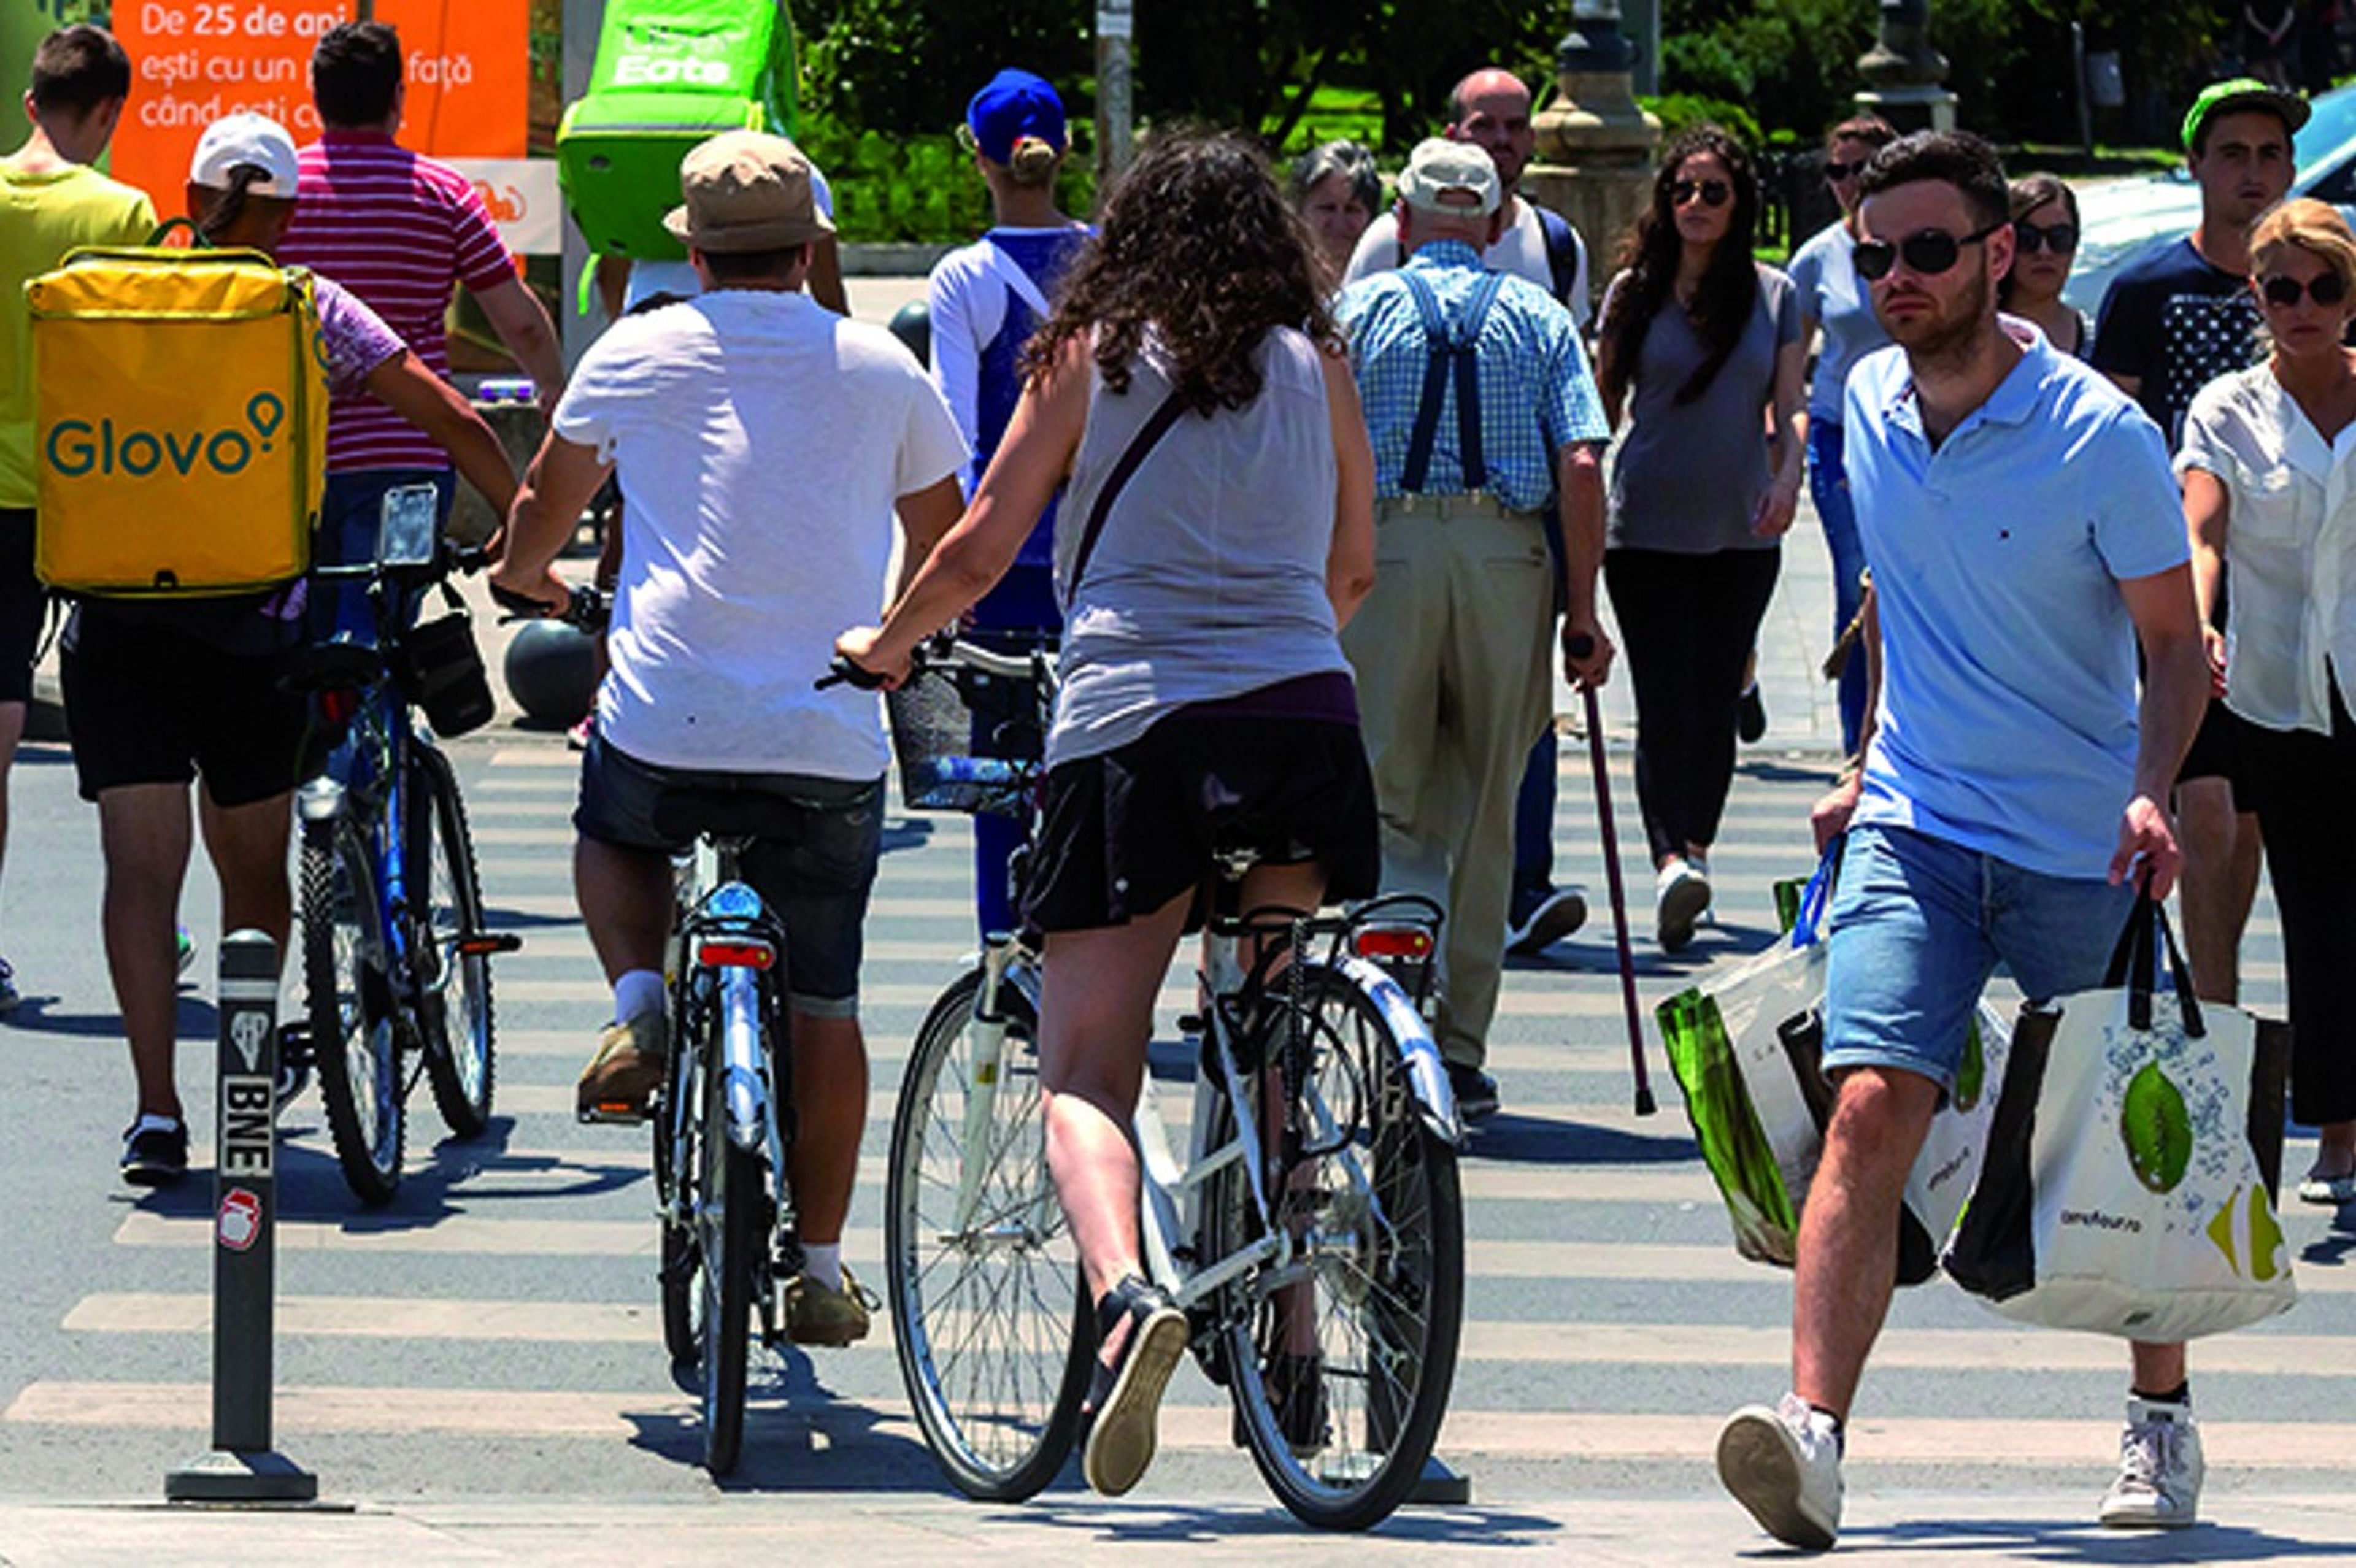 normas básicas para montar en bicicleta evitando multas, según la DGT